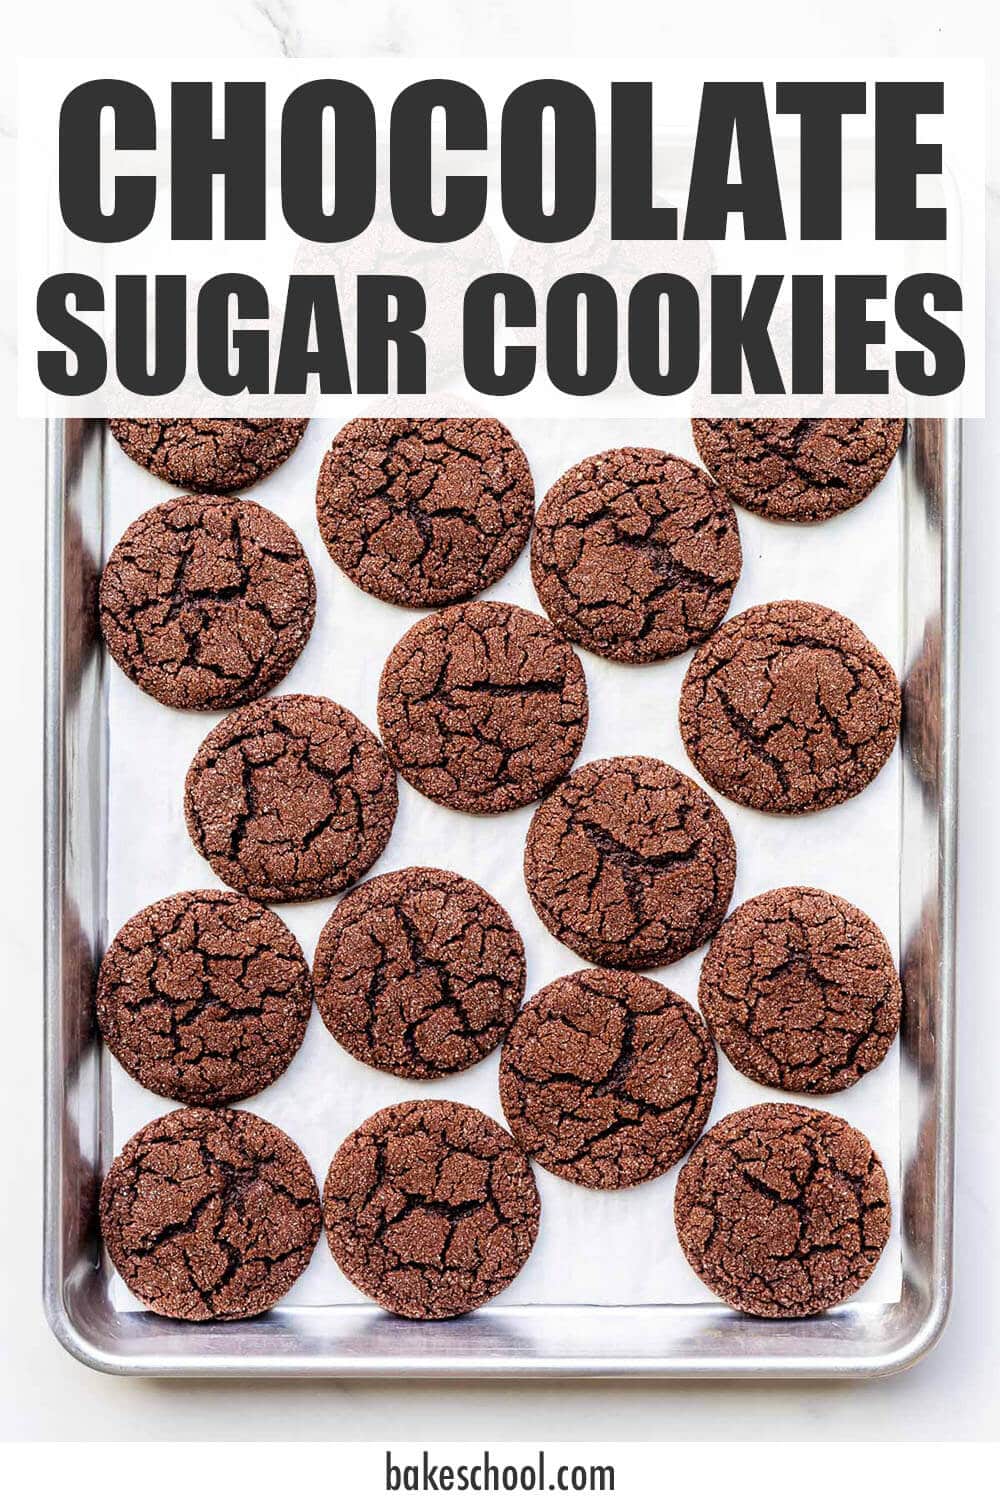 A sheet pan of freshly baked chocolate sugar cookies.